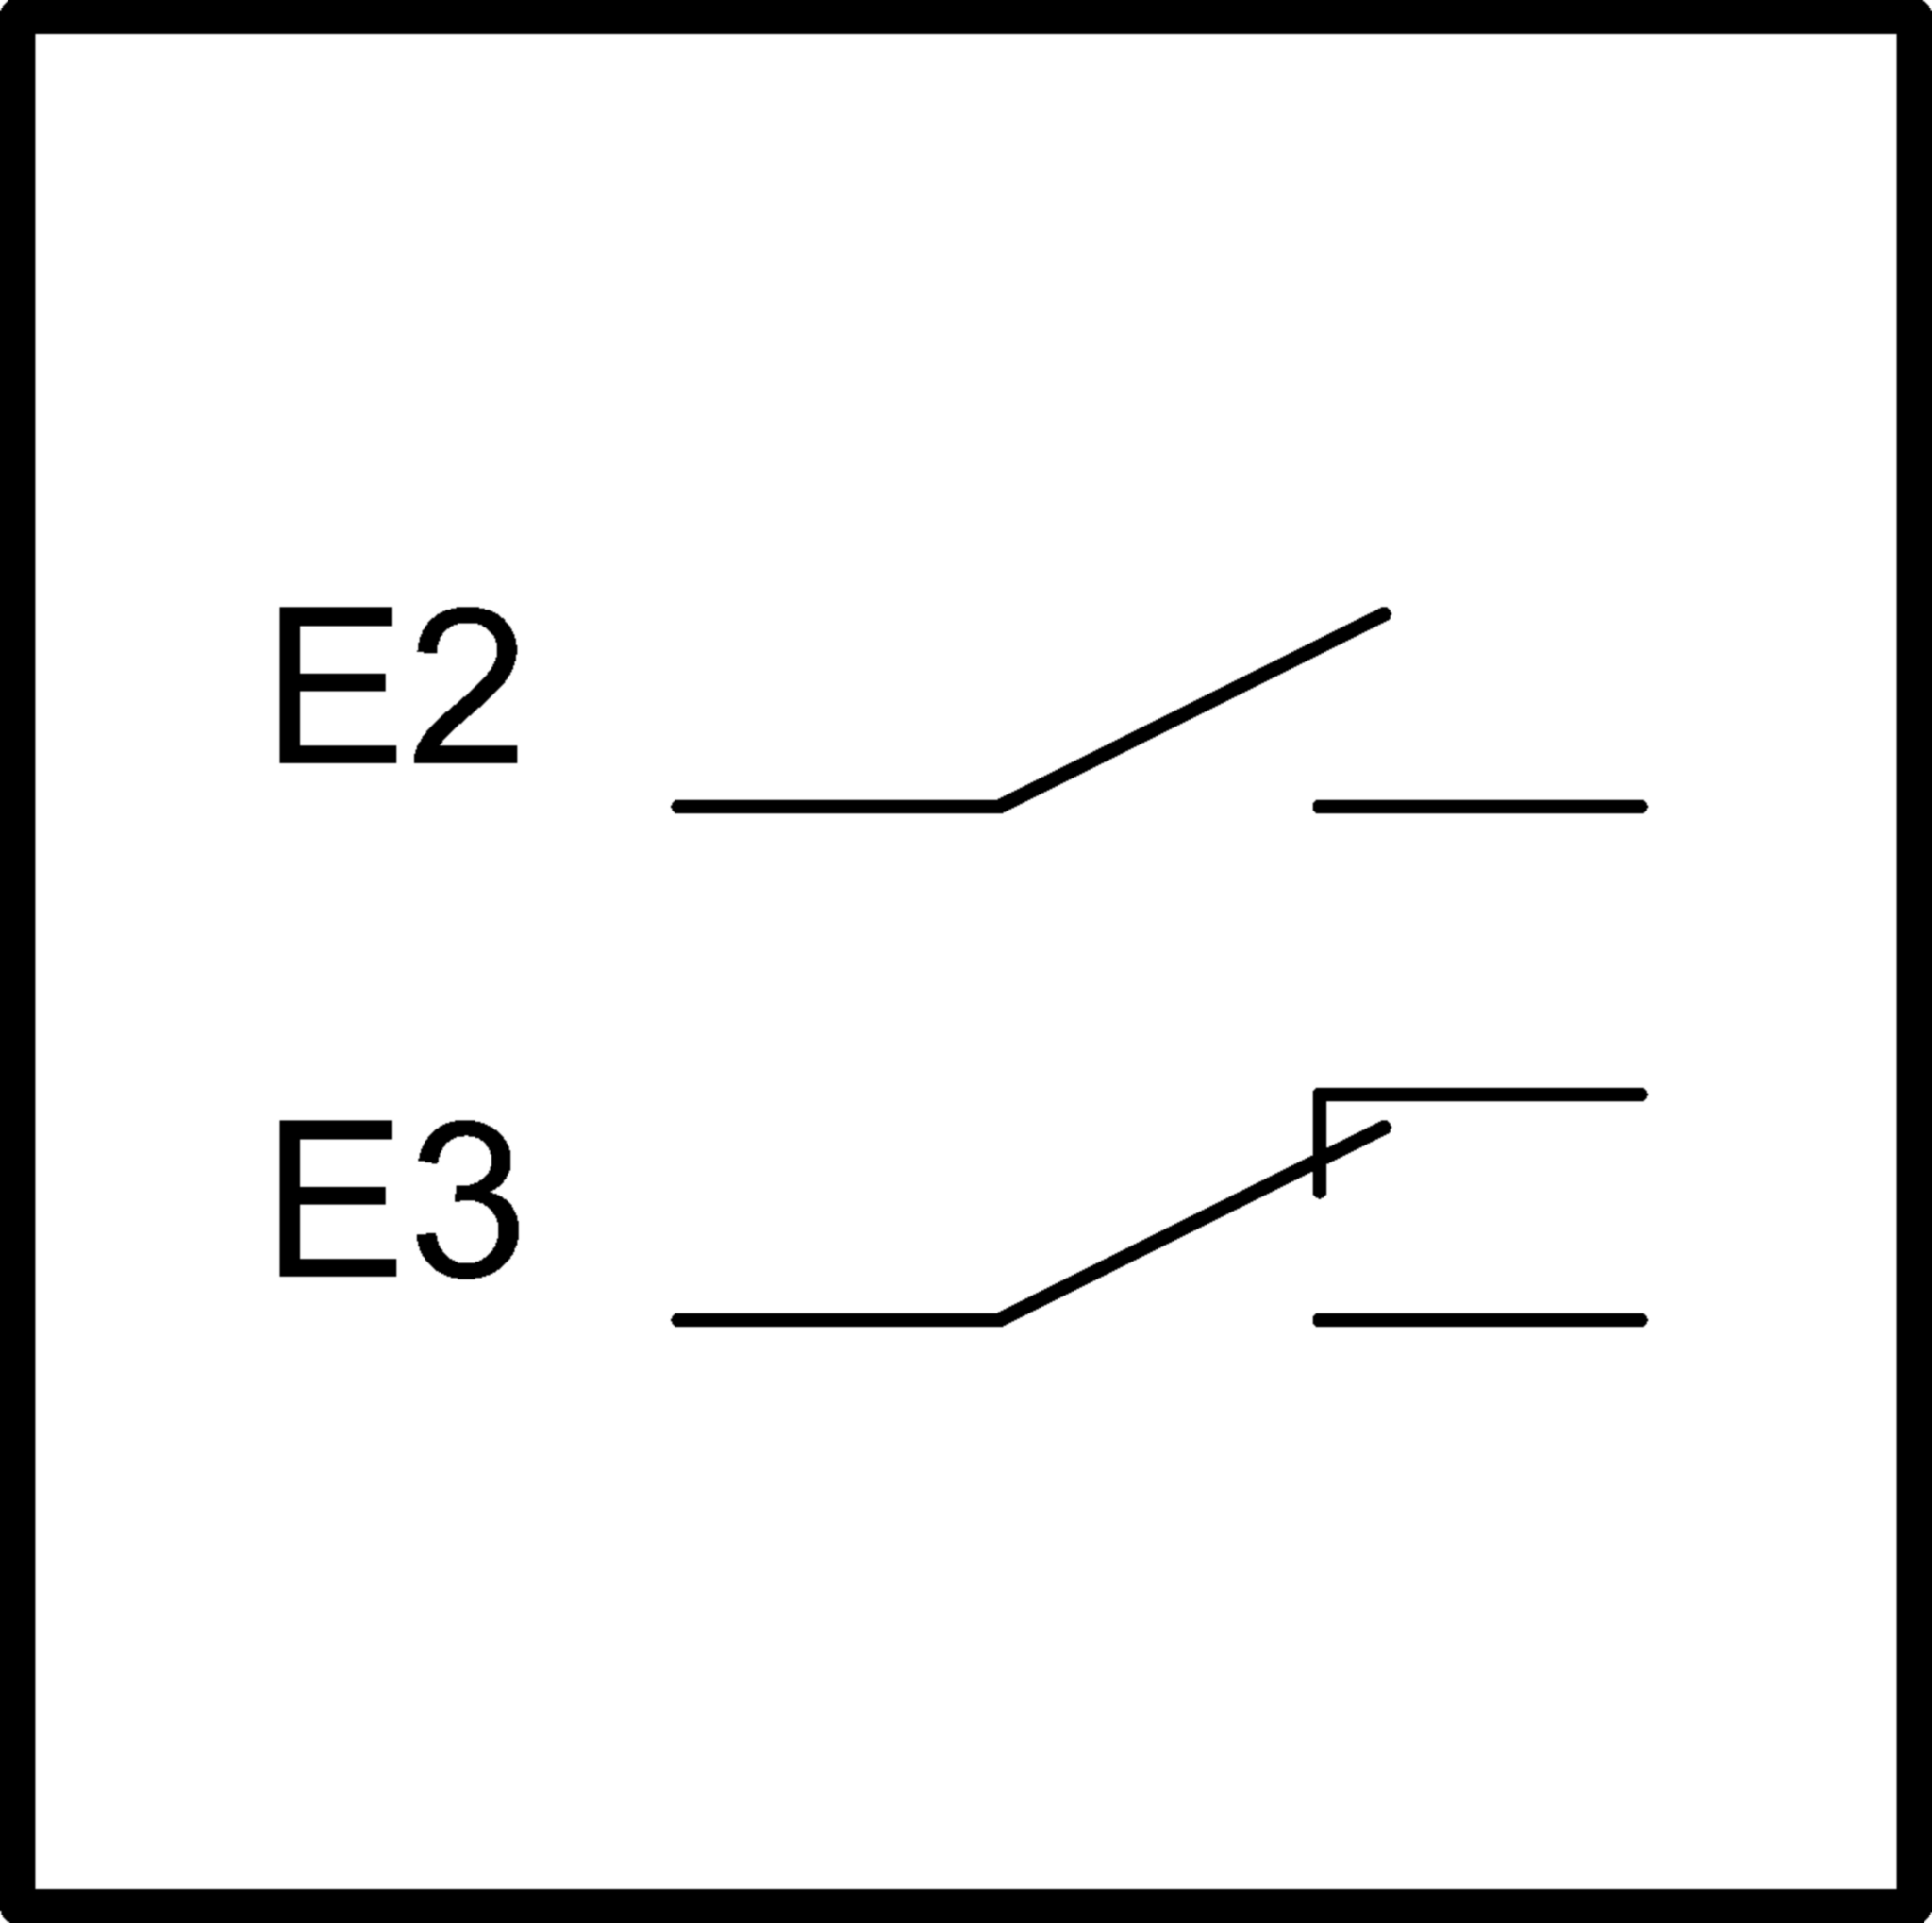 Exemplos de conexão